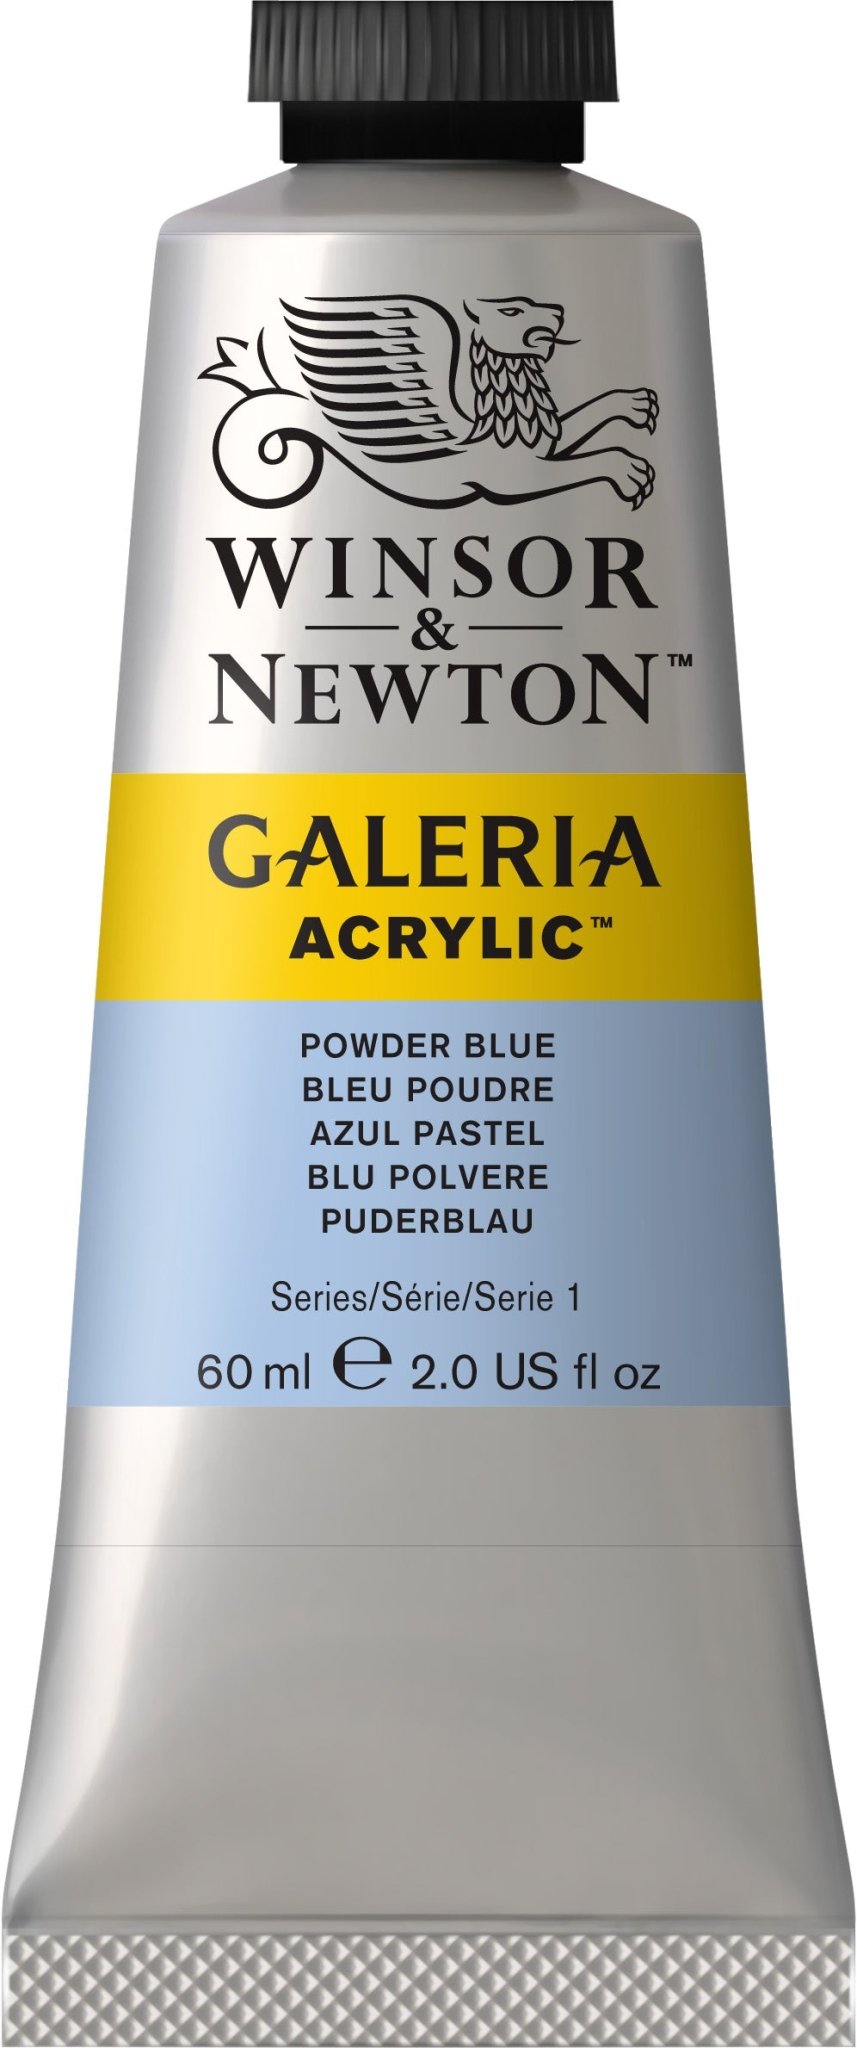 W & N Galeria Acrylic 60ml Powder Blue - theartshop.com.au